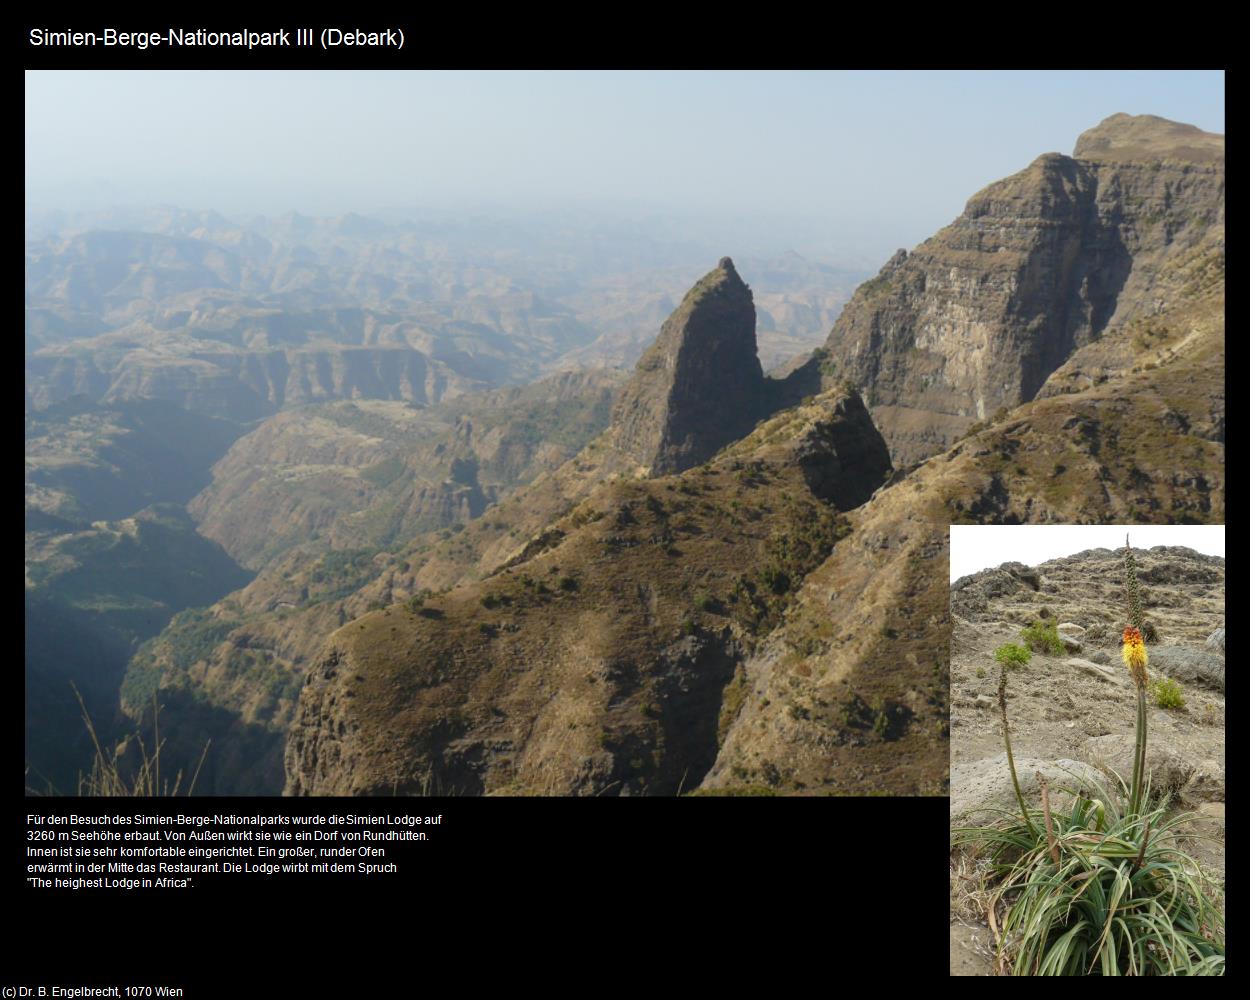 Simien-Berge-Nationalpark III (Debark) in Äthiopien